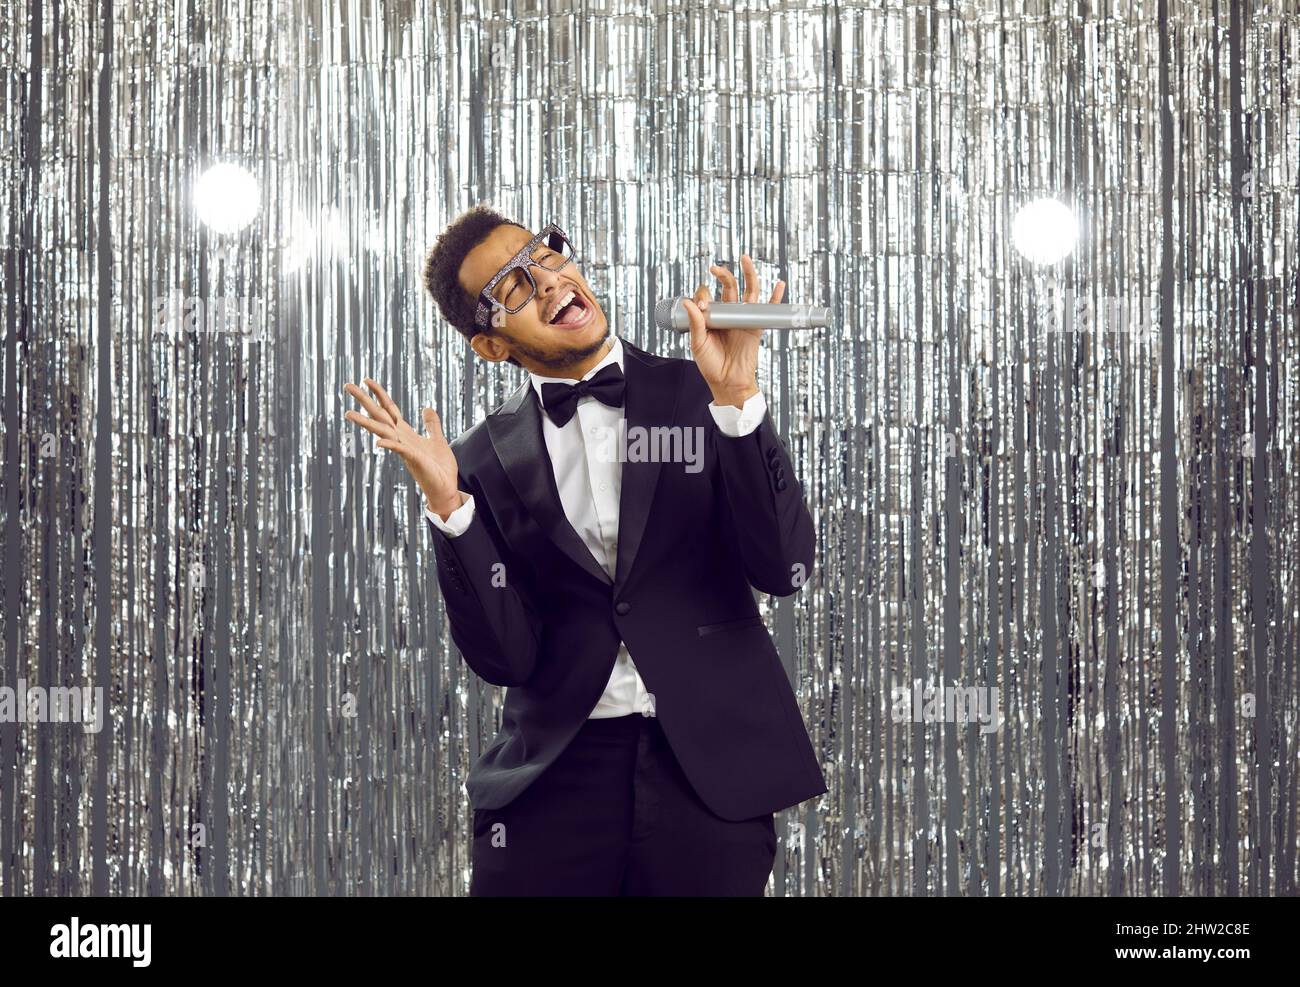 Smiling black man sing karaoke in mic Stock Photo